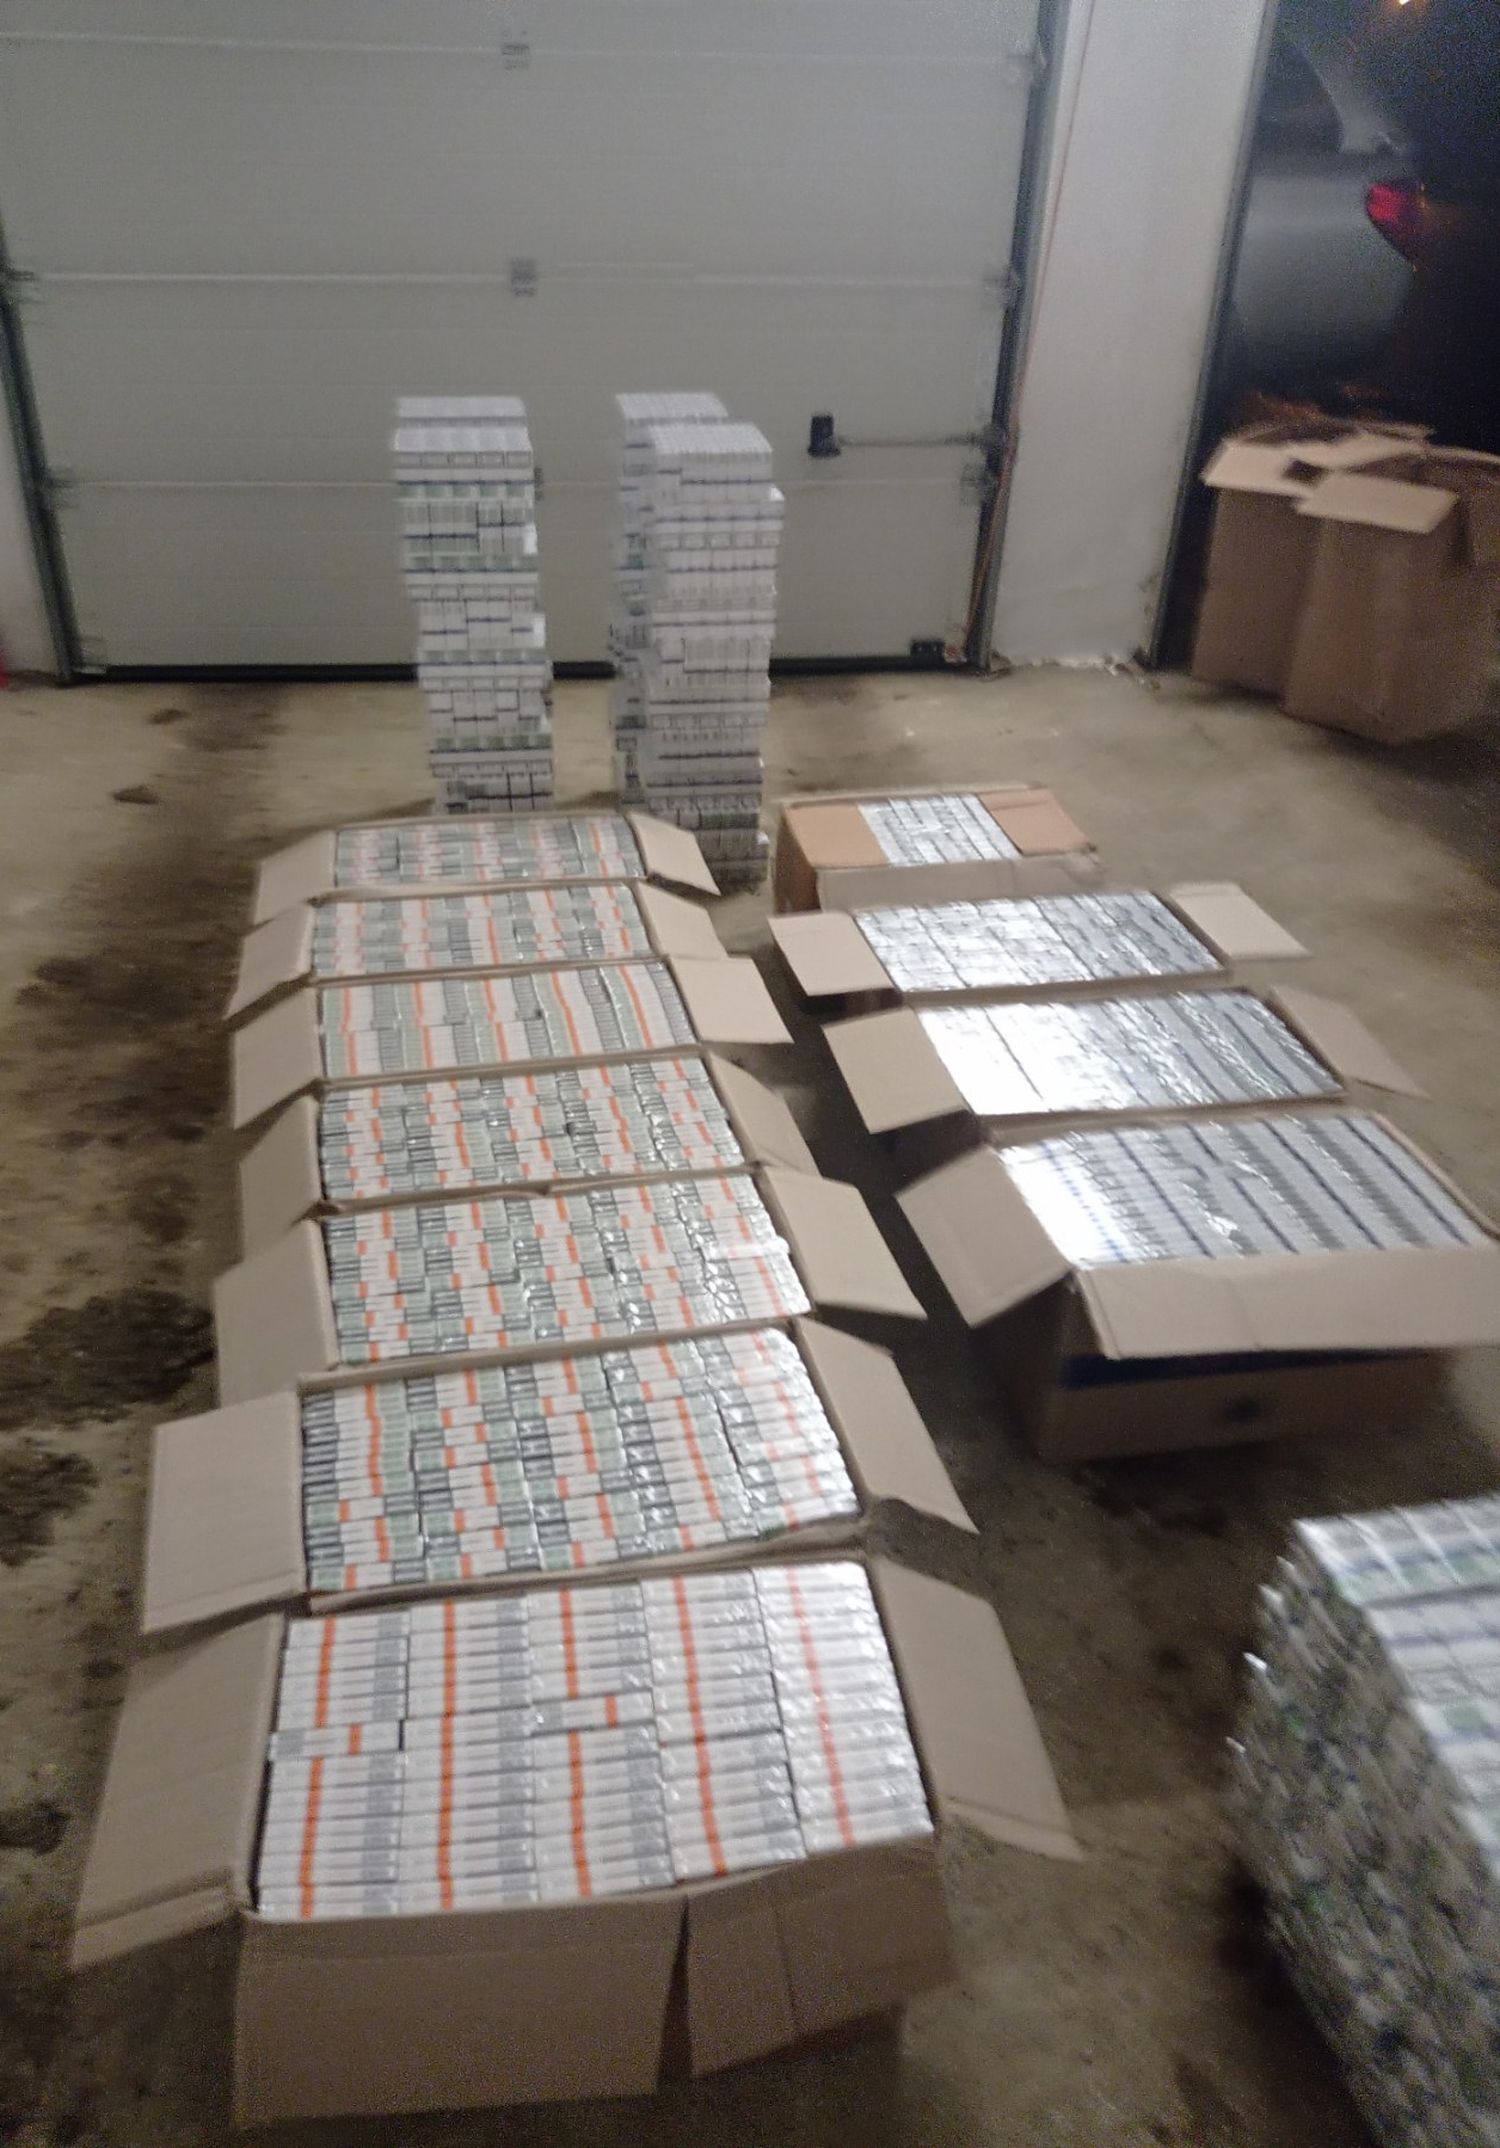 Csaknem 11 ezer doboz csempészett cigit találtak a rendőrök egy autóban